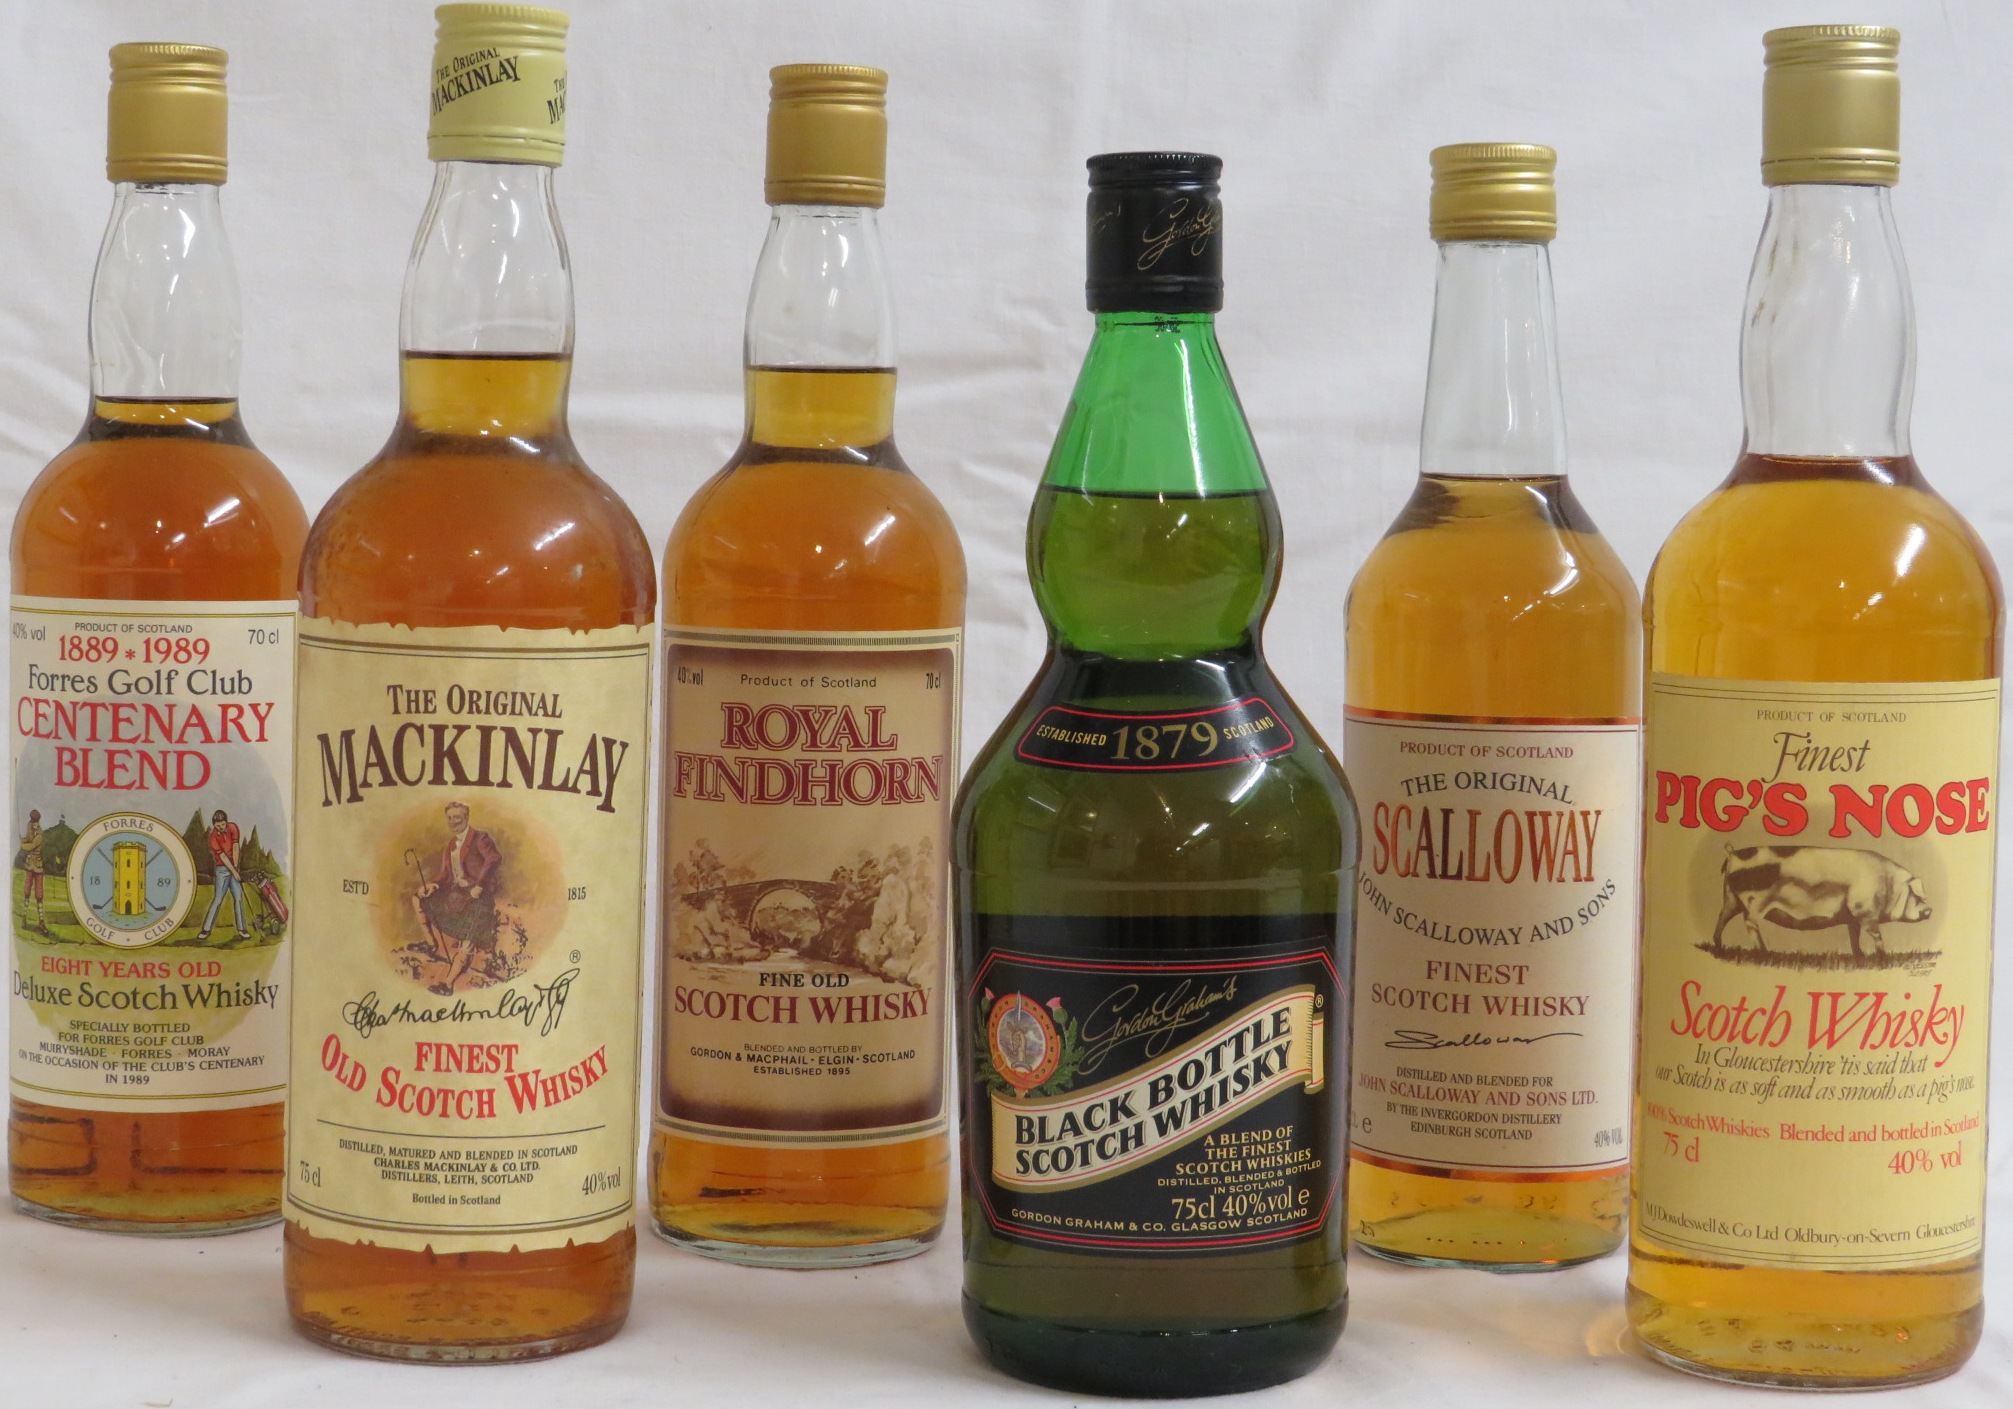 Bottle of Royal Findhorn fine old Scotch whisky, 70cl; bottle of Forres Golf Club centenary blend de